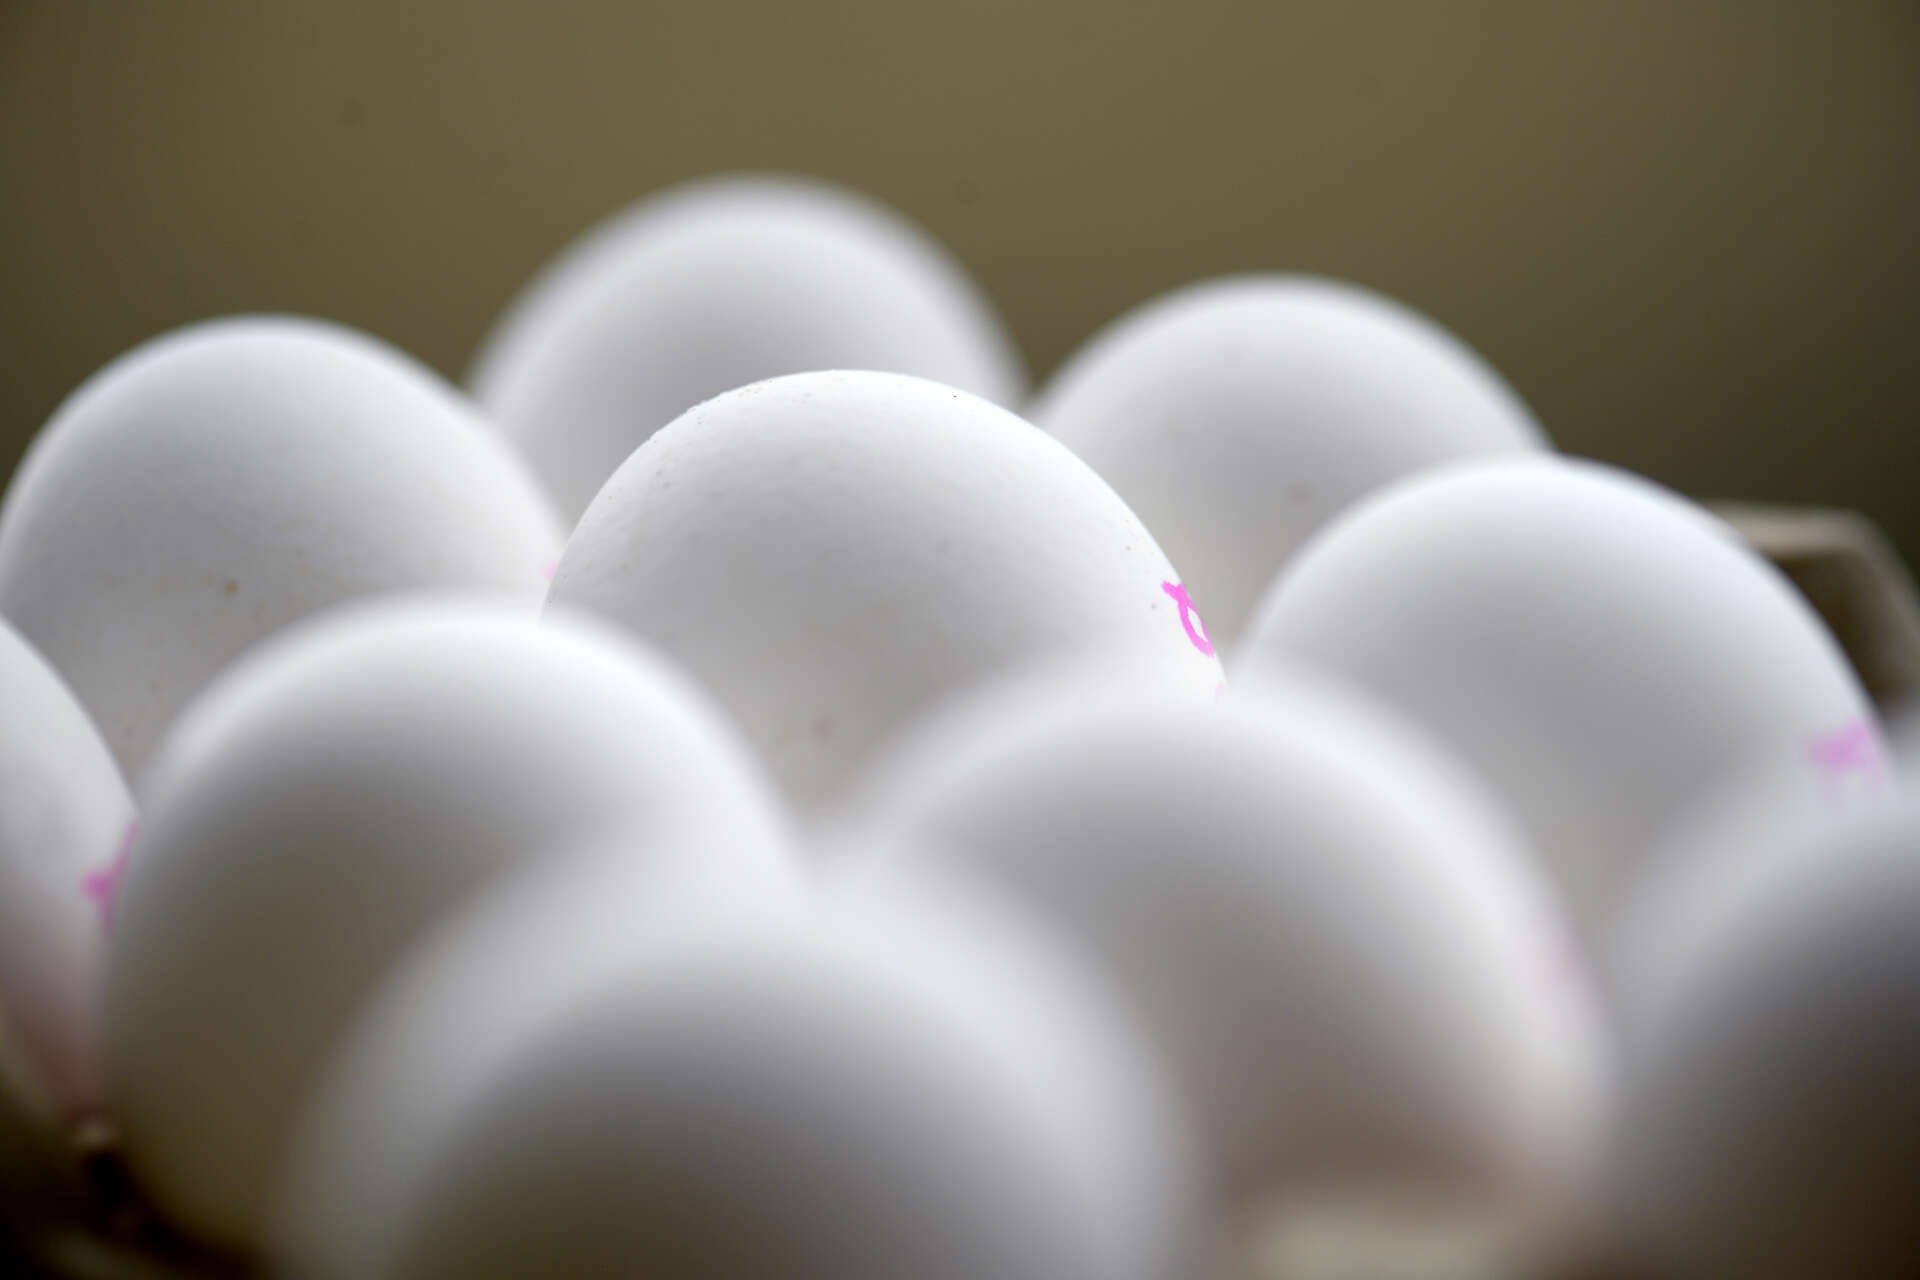 Enligt experter ska man välja svenska ägg om man vill undvika salmonella. Arkivbild.